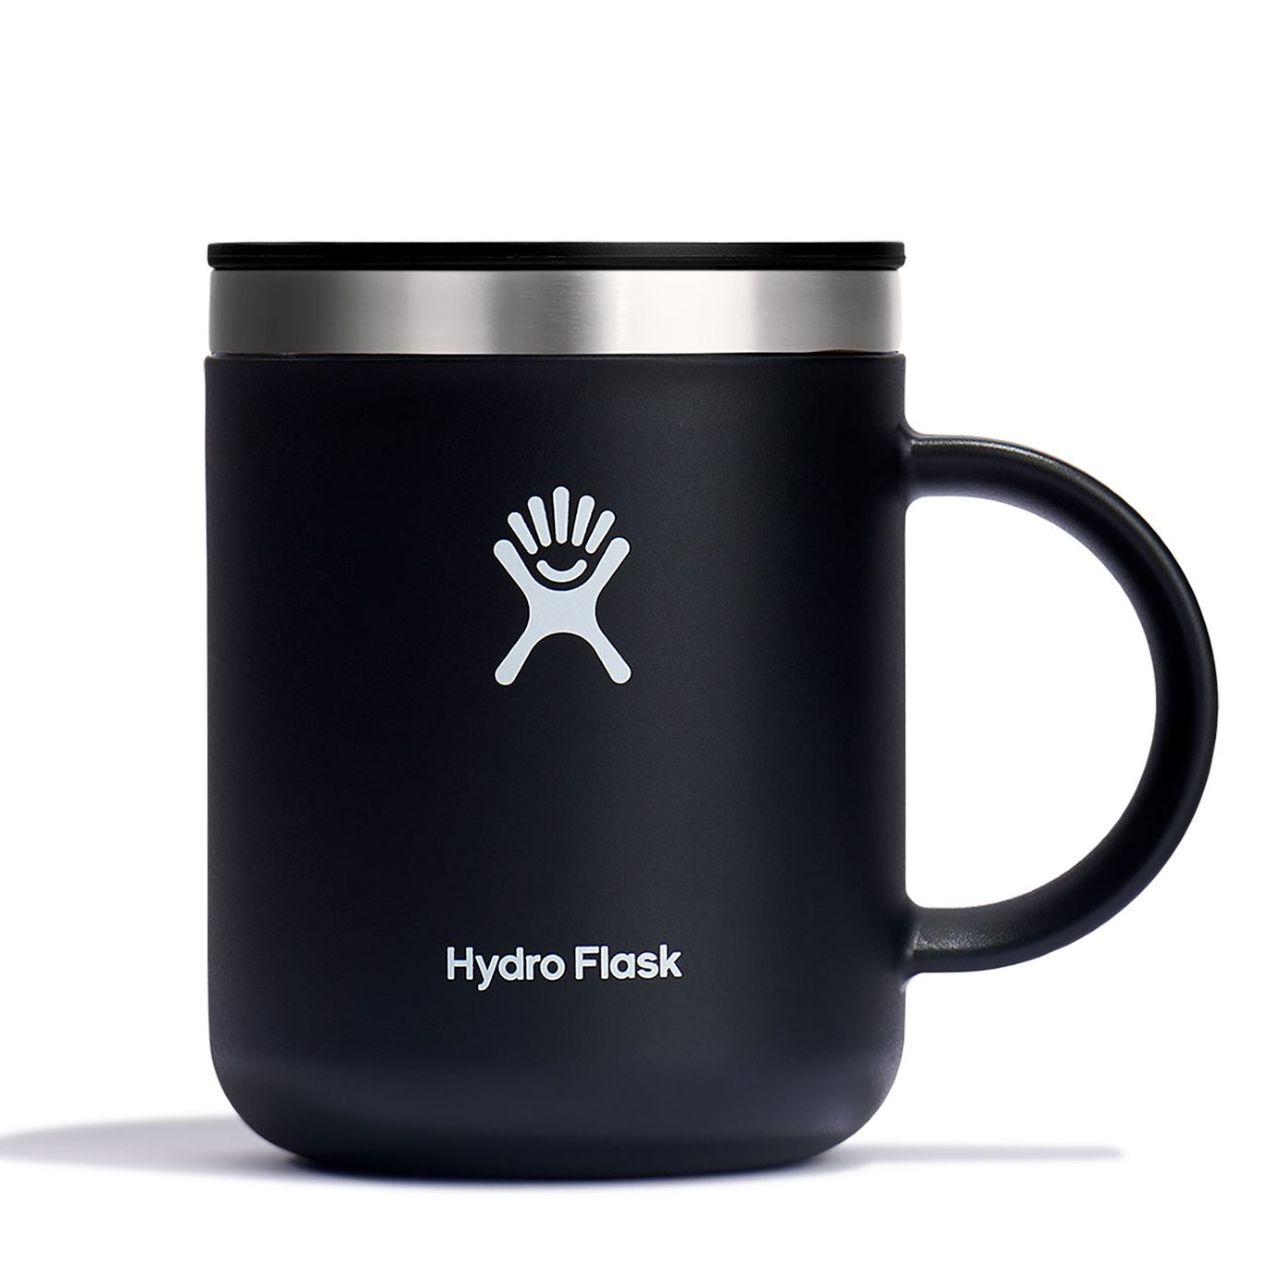 Hydro Flask Mug - 12 fl. oz.